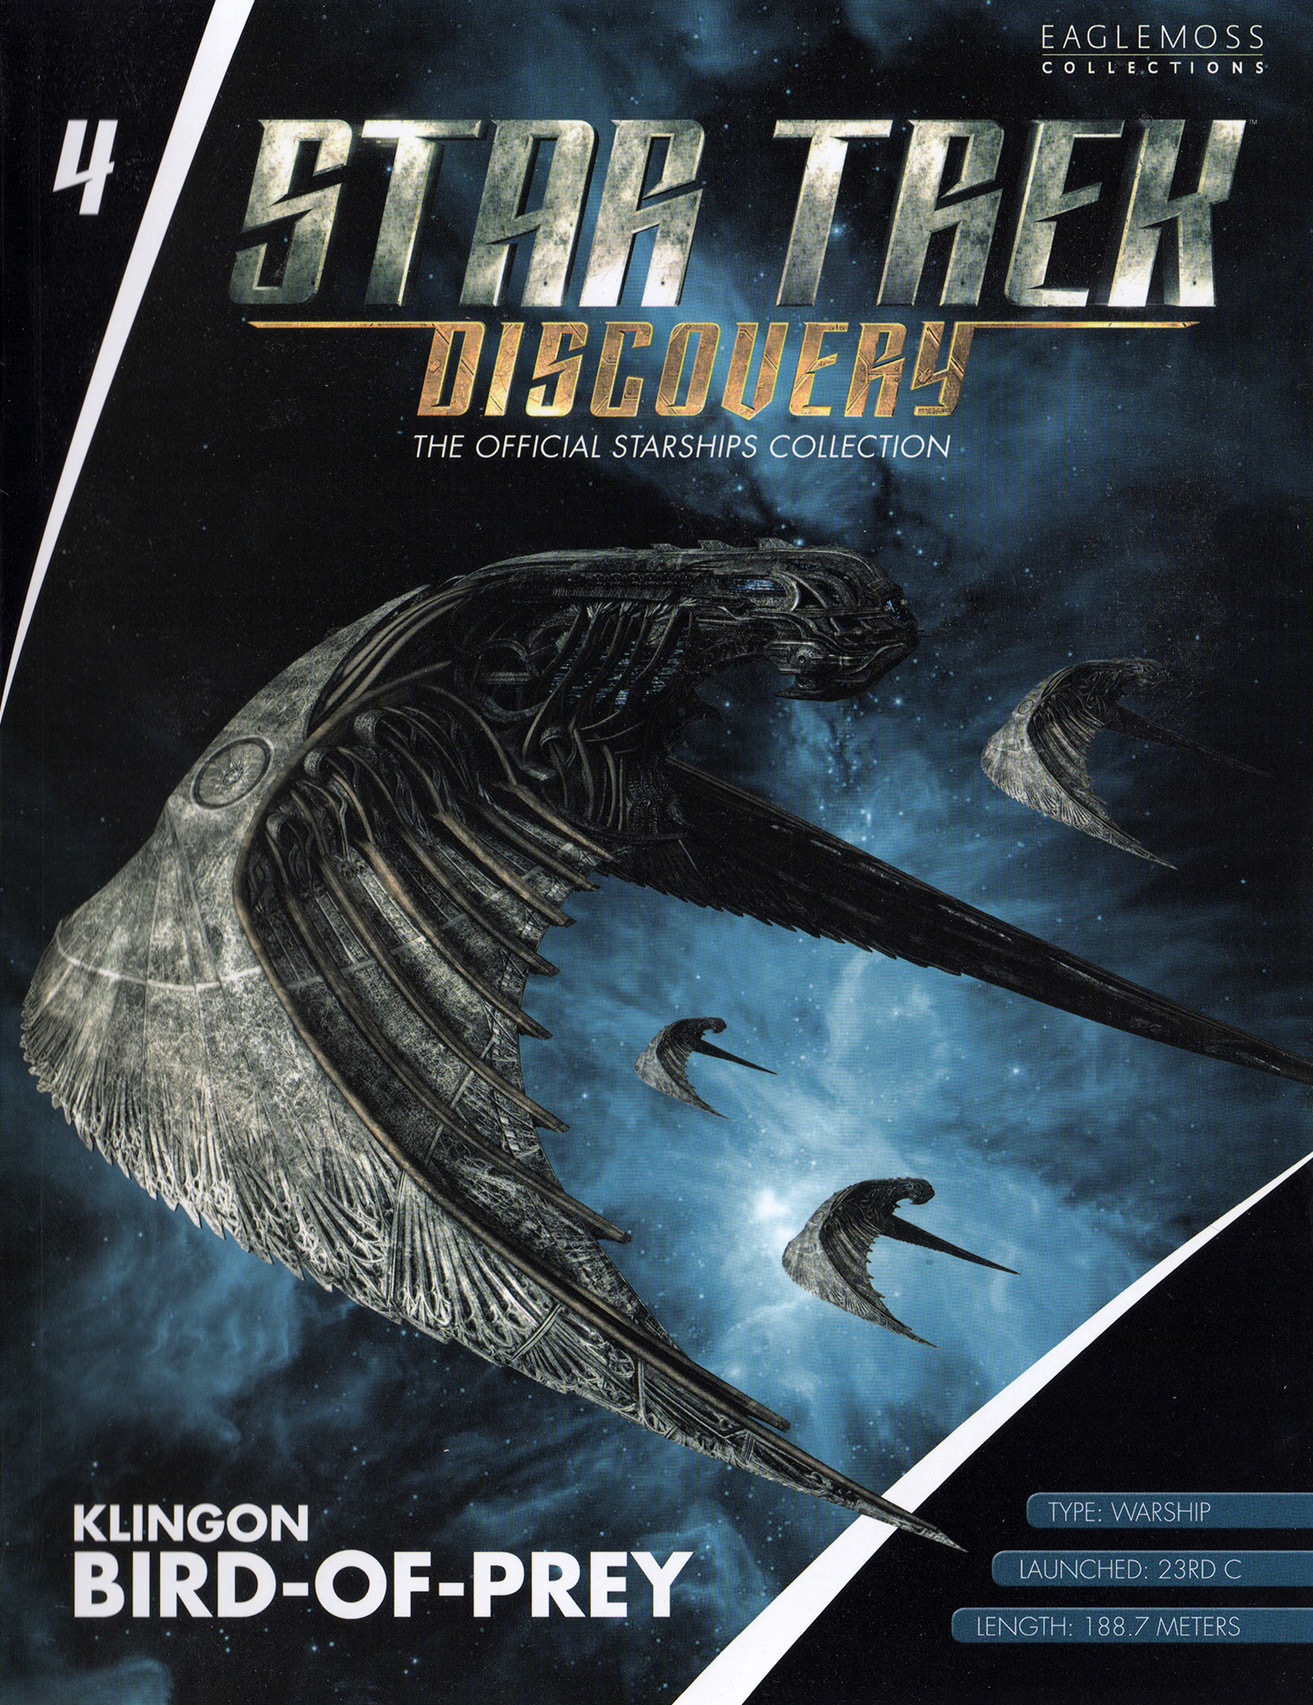 Eaglemoss Star Trek Starships Discovery Issue 4